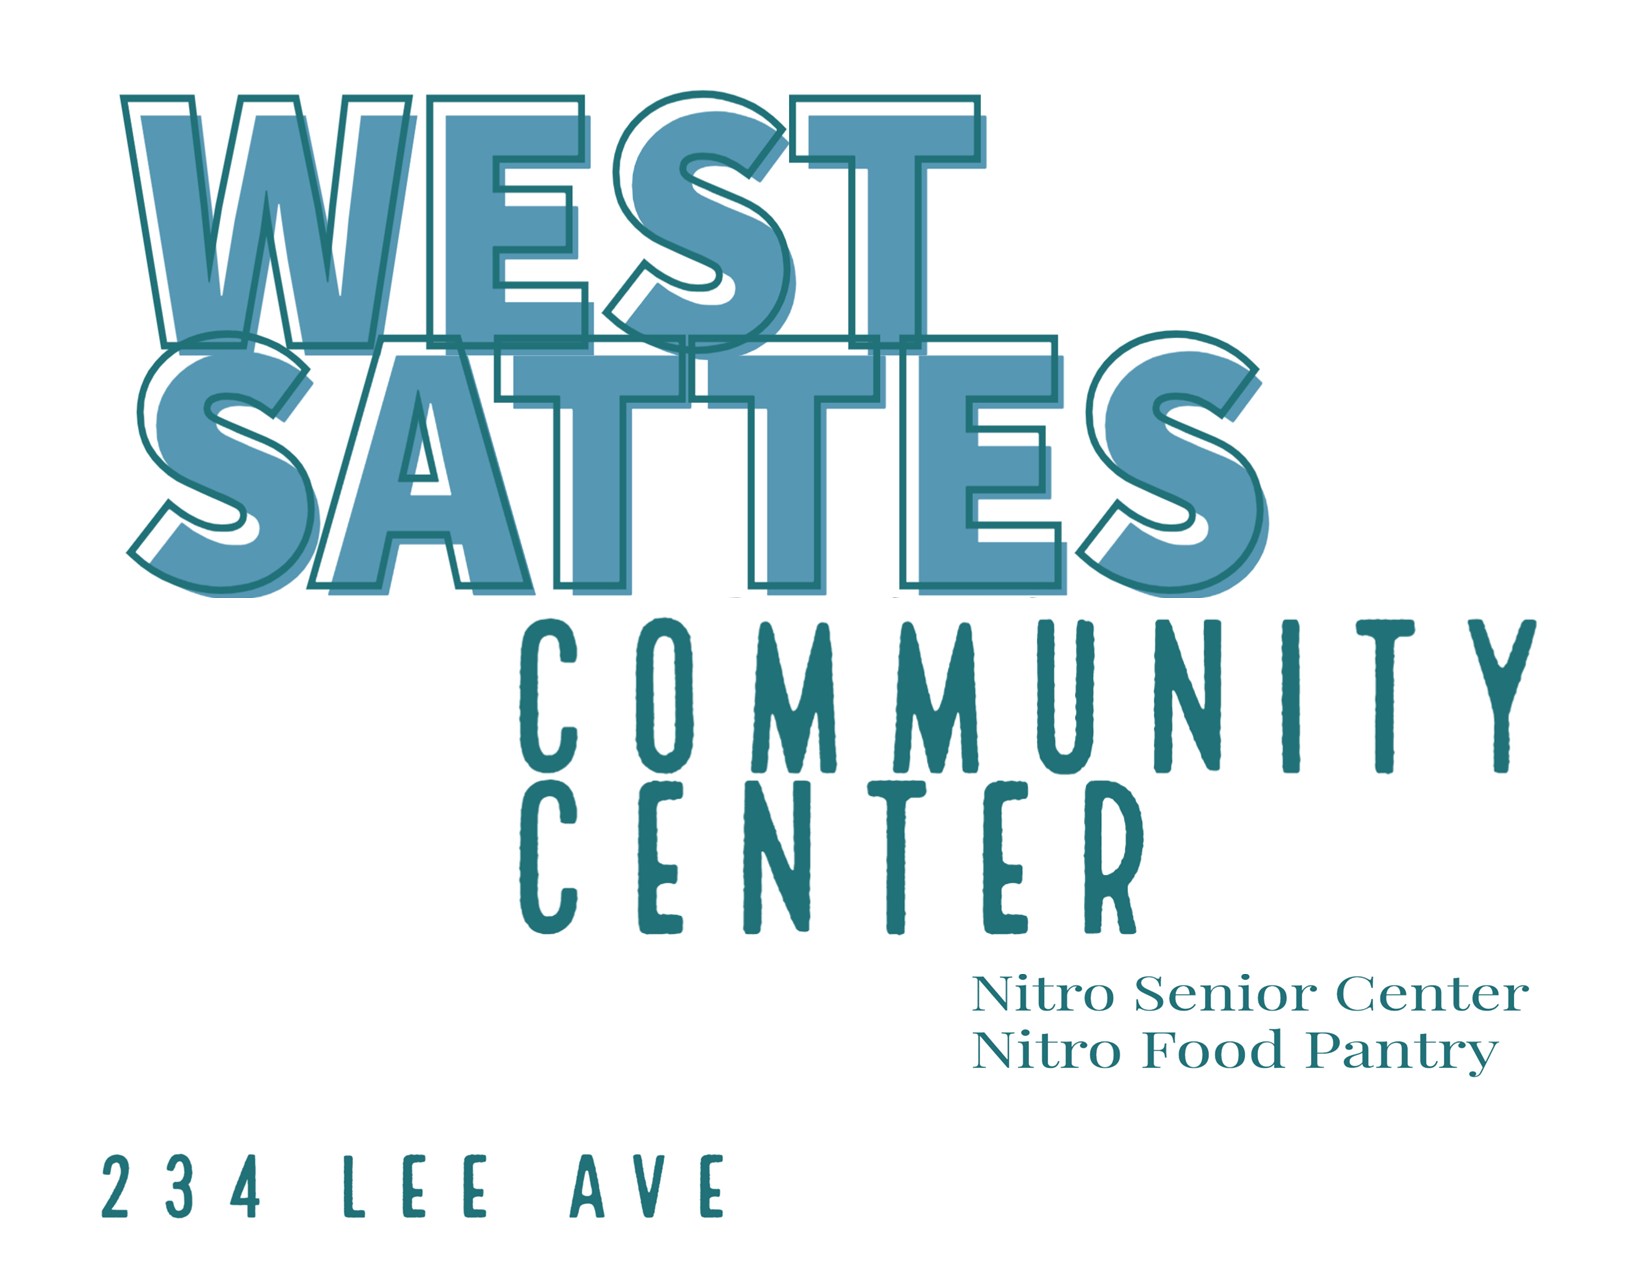 West Sattes Community Center